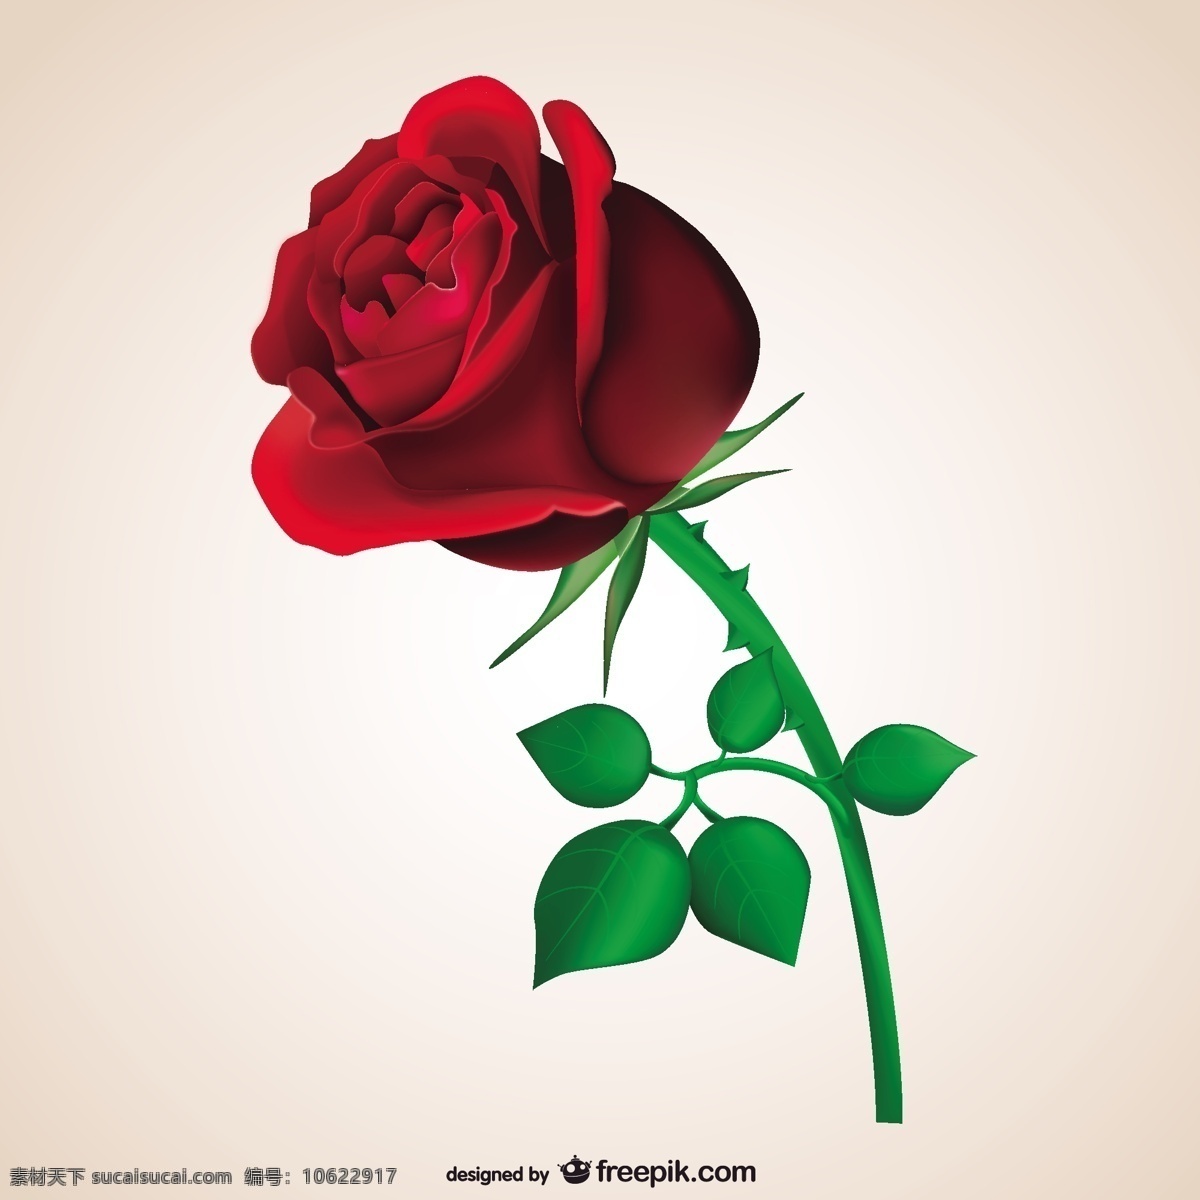 热情的红玫瑰 玫瑰 情人节 红色 浪漫 激情 充满激情